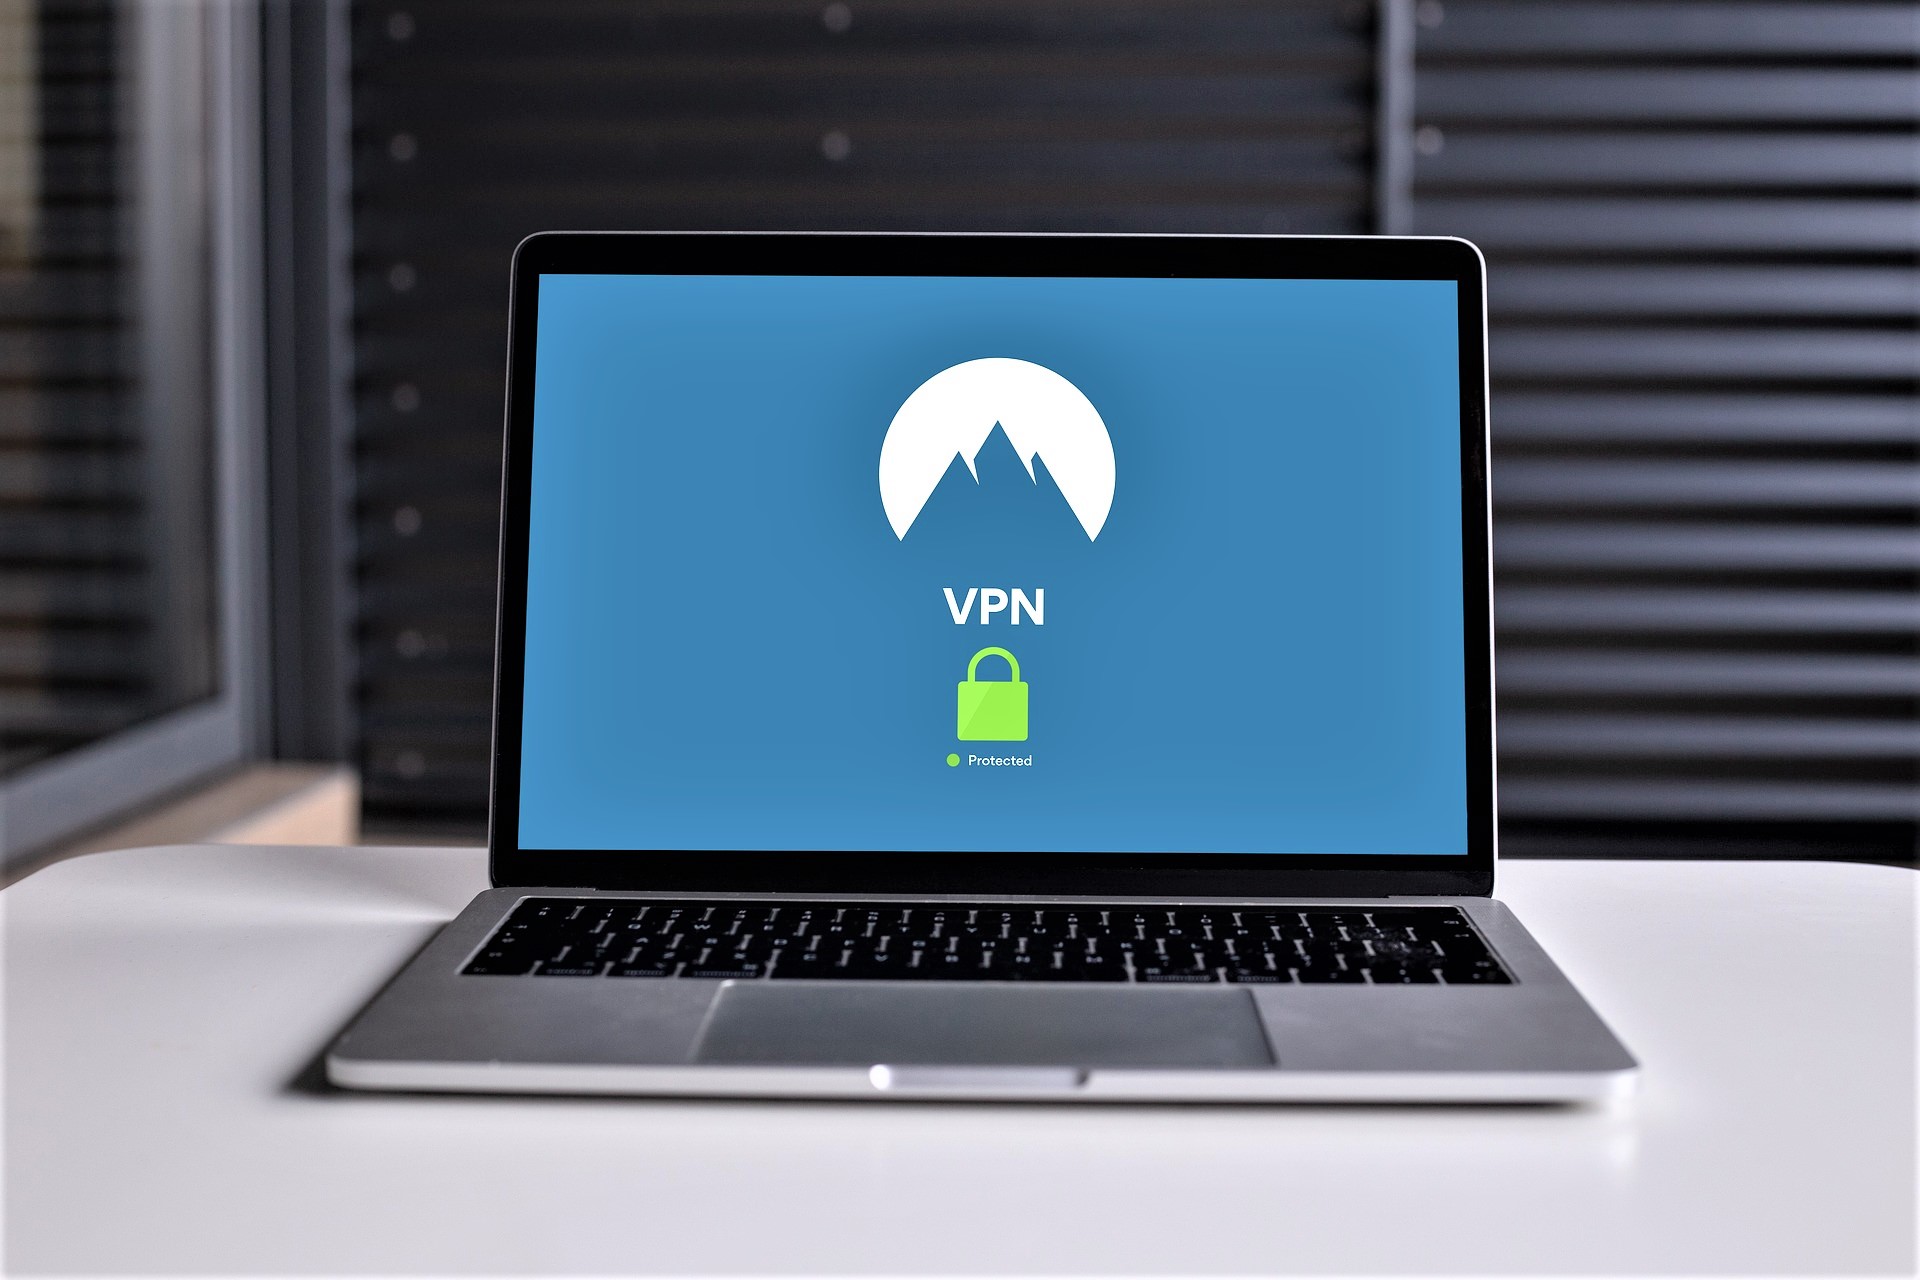 VPN Settings in Windows 10